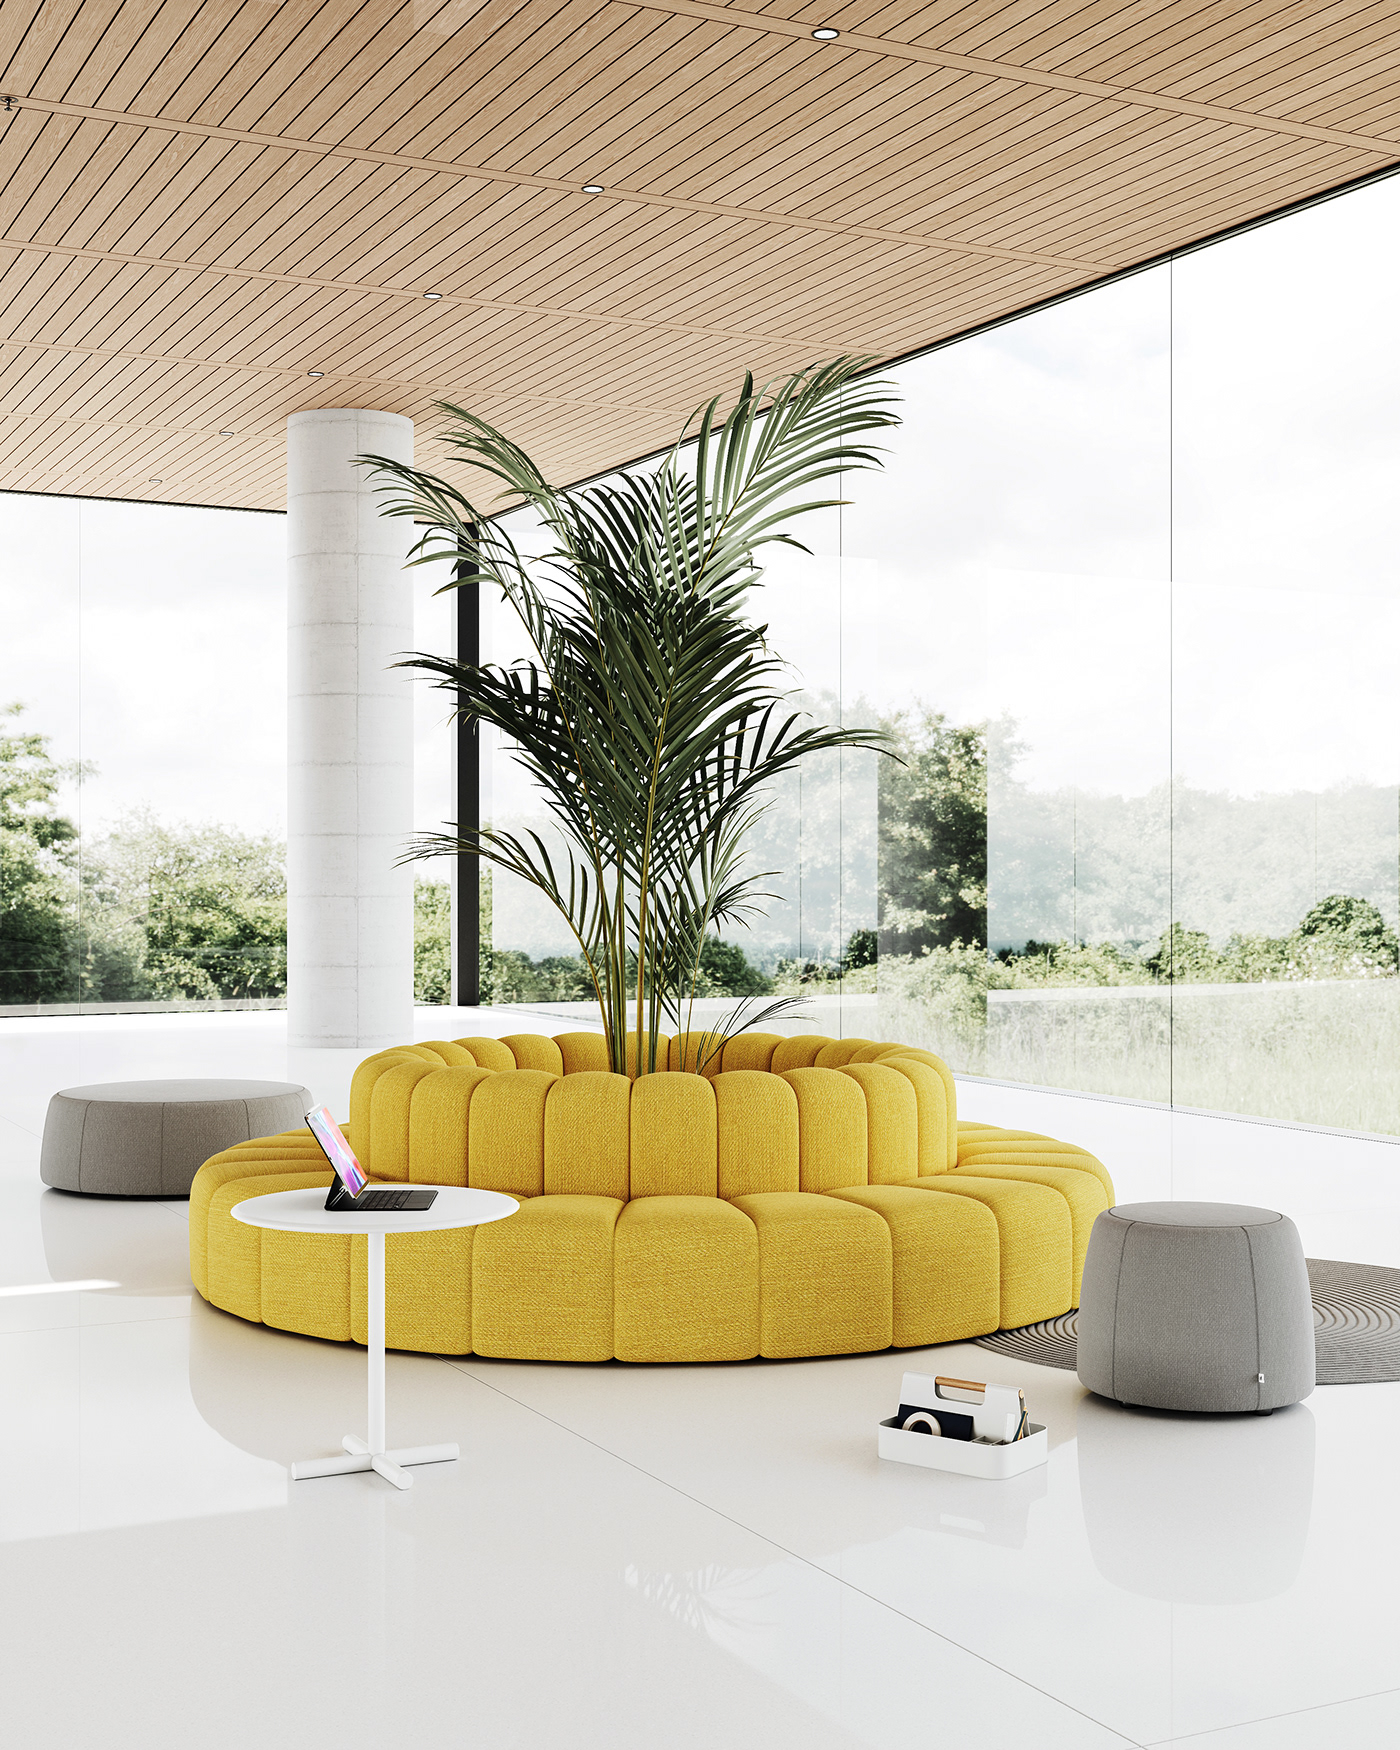 furniture product design  office furniture visualization 3D